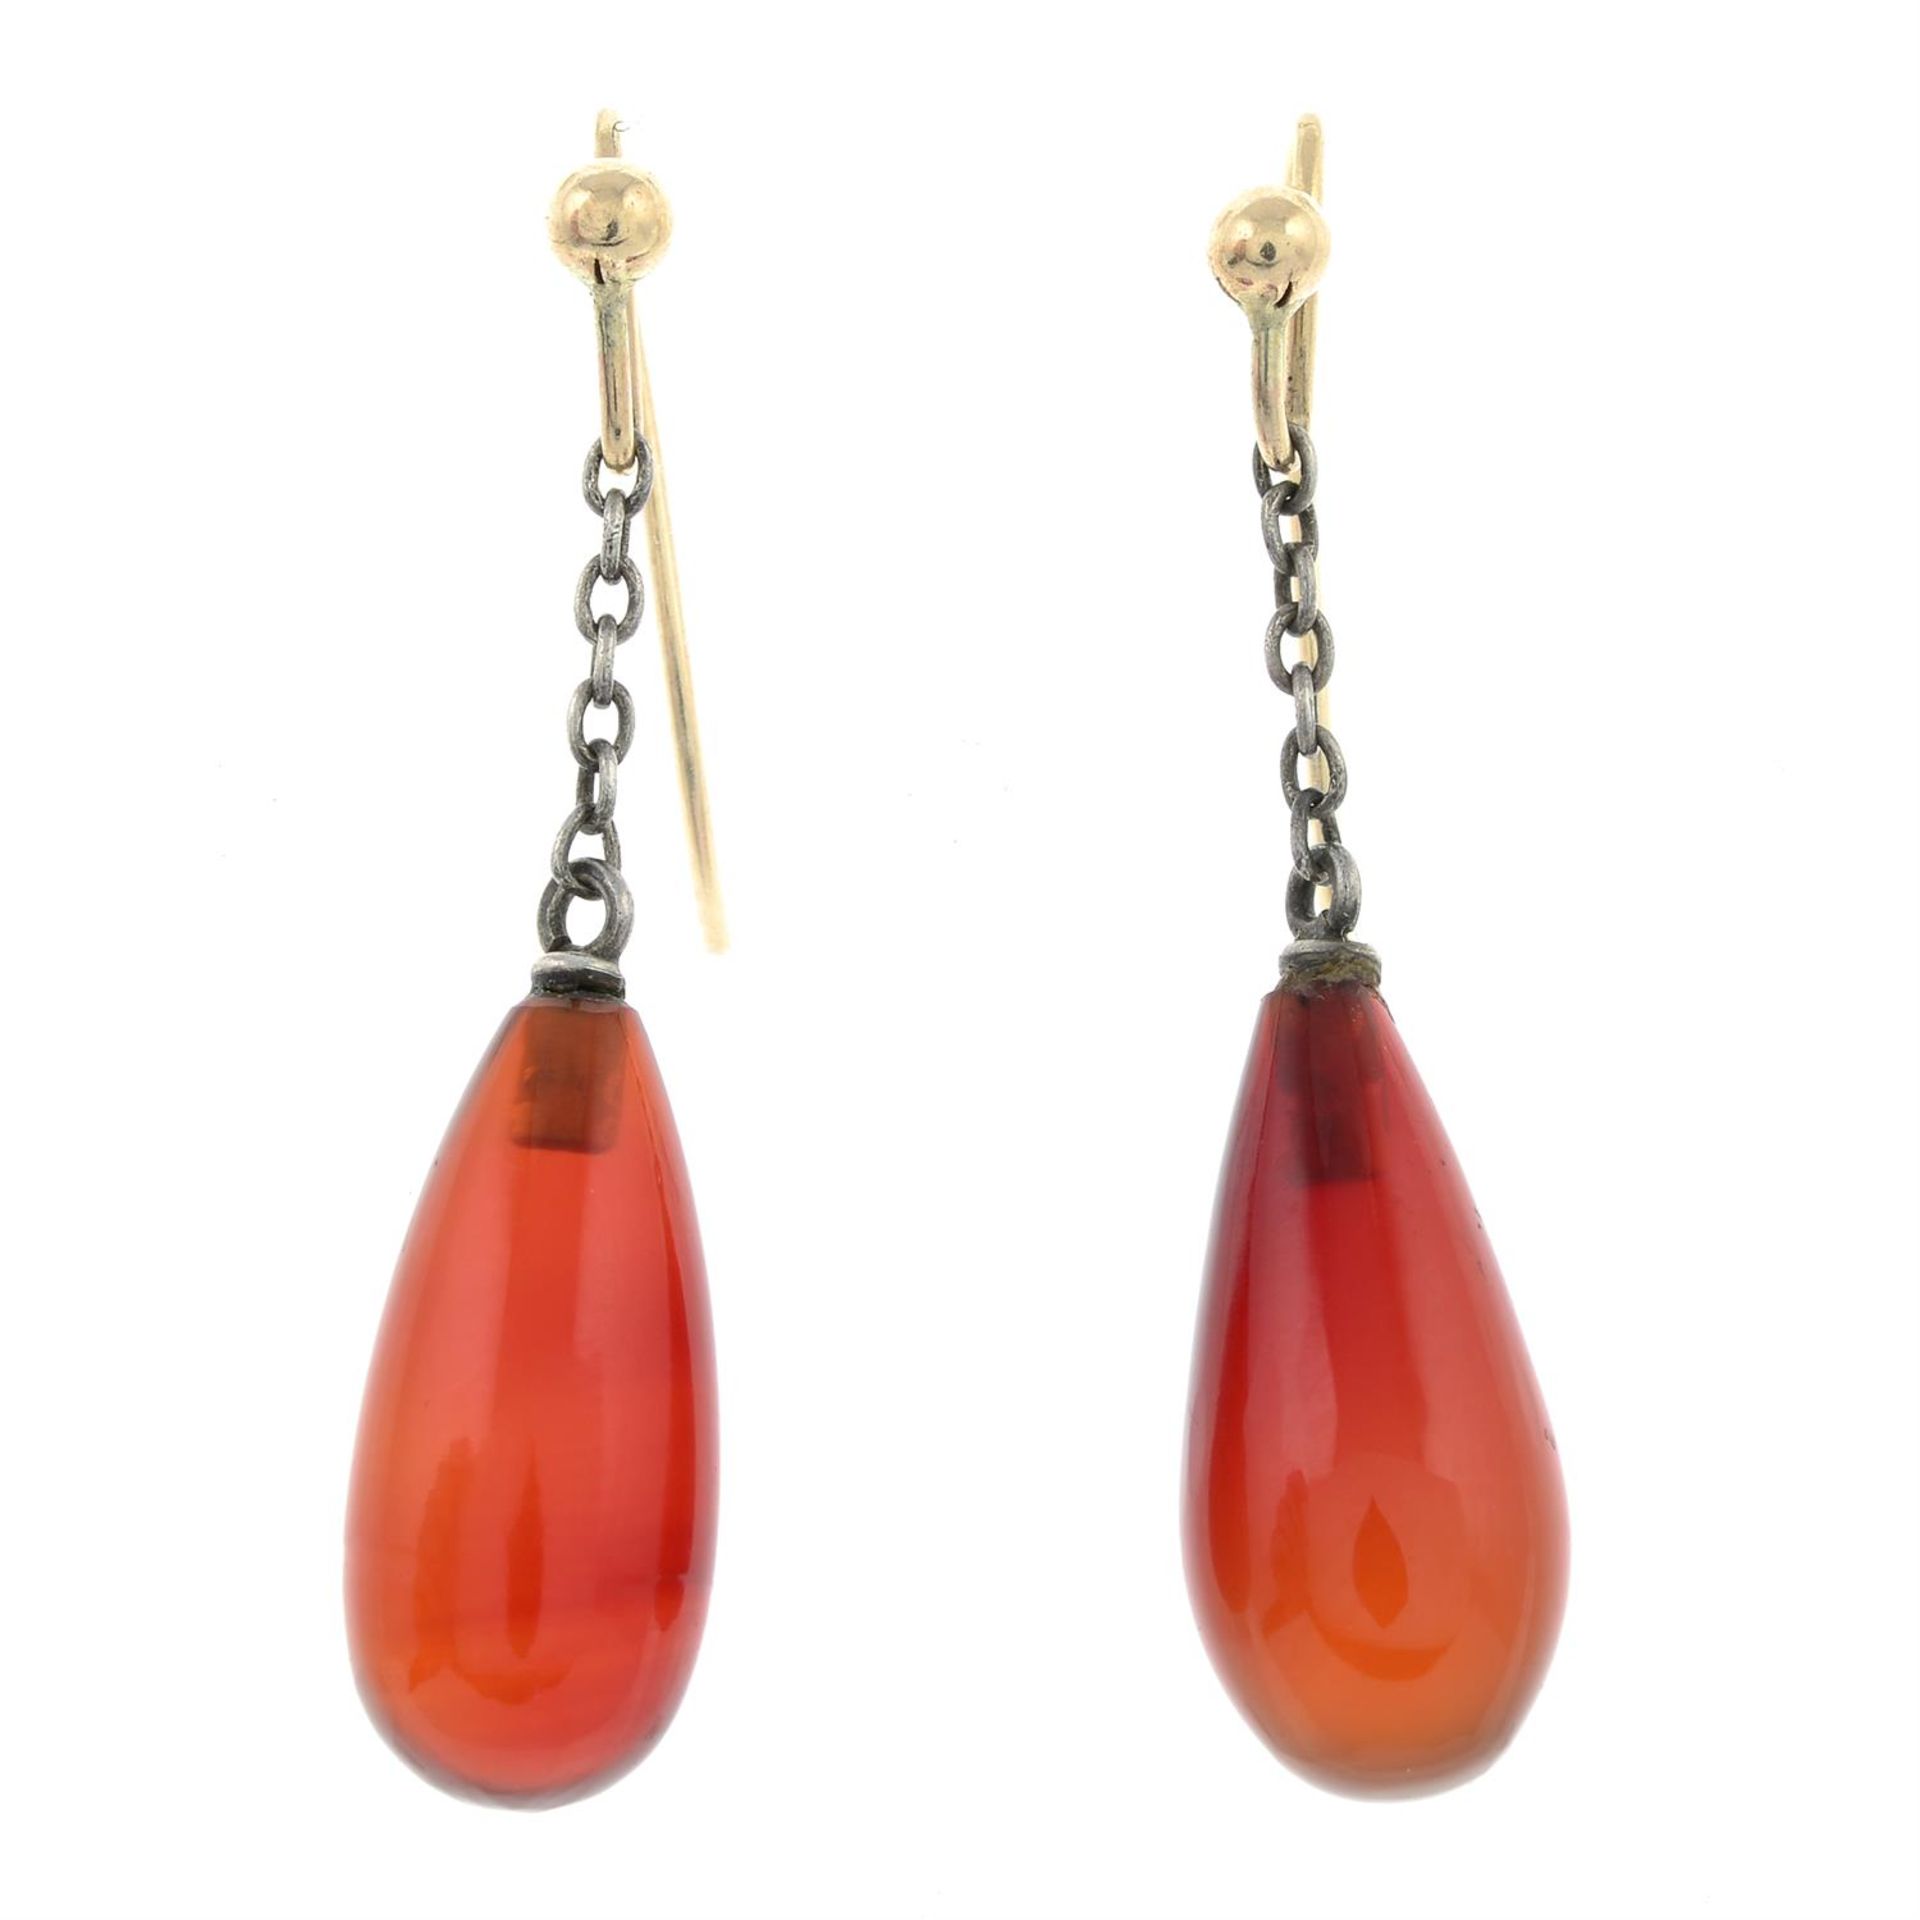 A pair of carnelian drop earrings.